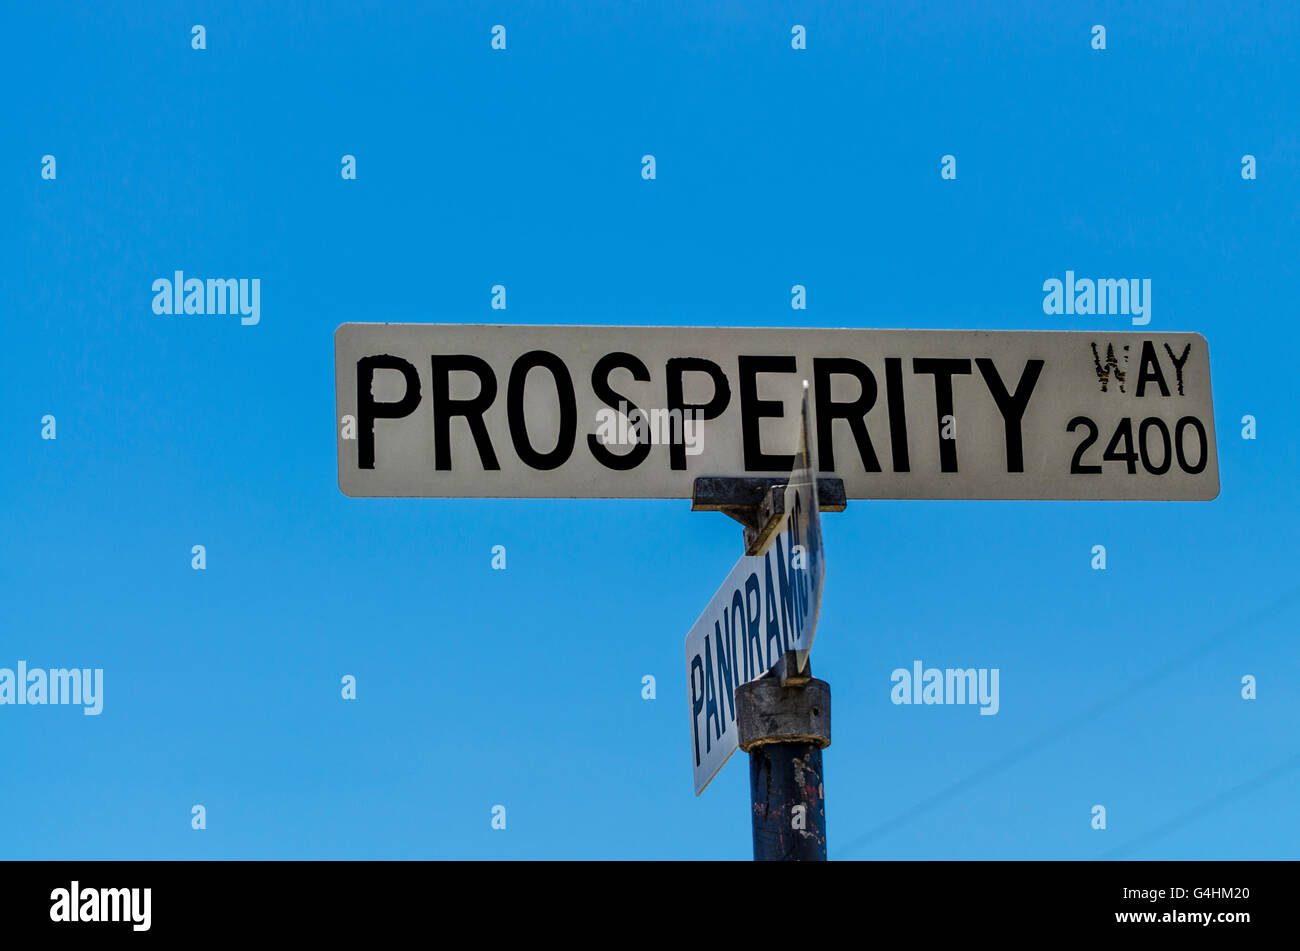 Prosperity way in San Leandro California USA Stock Photo